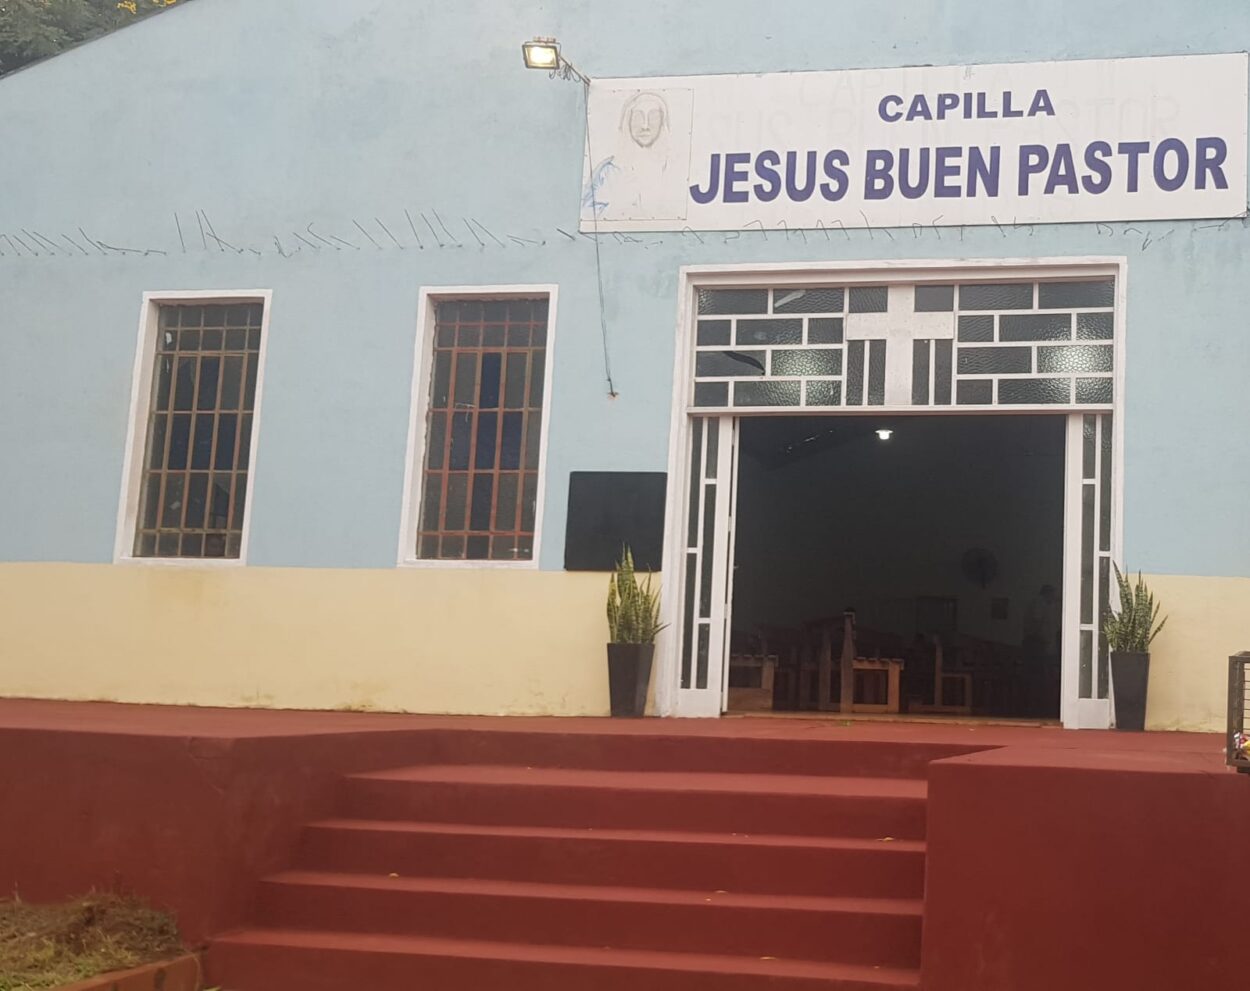 Capilla “Jesús Buen Pastor” celebrará su fiesta patronal este domingo 21 imagen-10